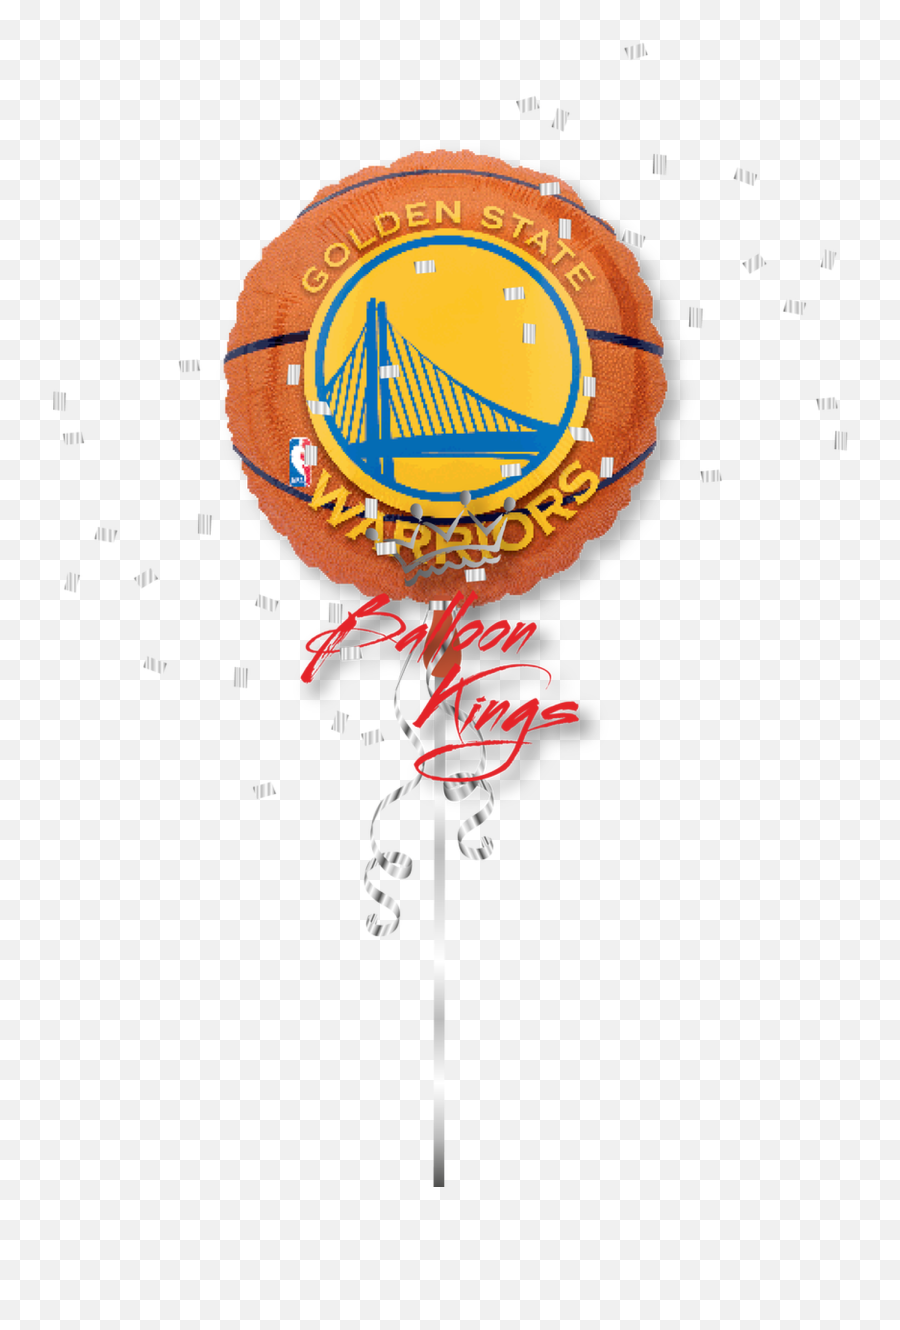 Golden State Warriors - Basketball Ballons Png,Golden State Warriors Logo Png